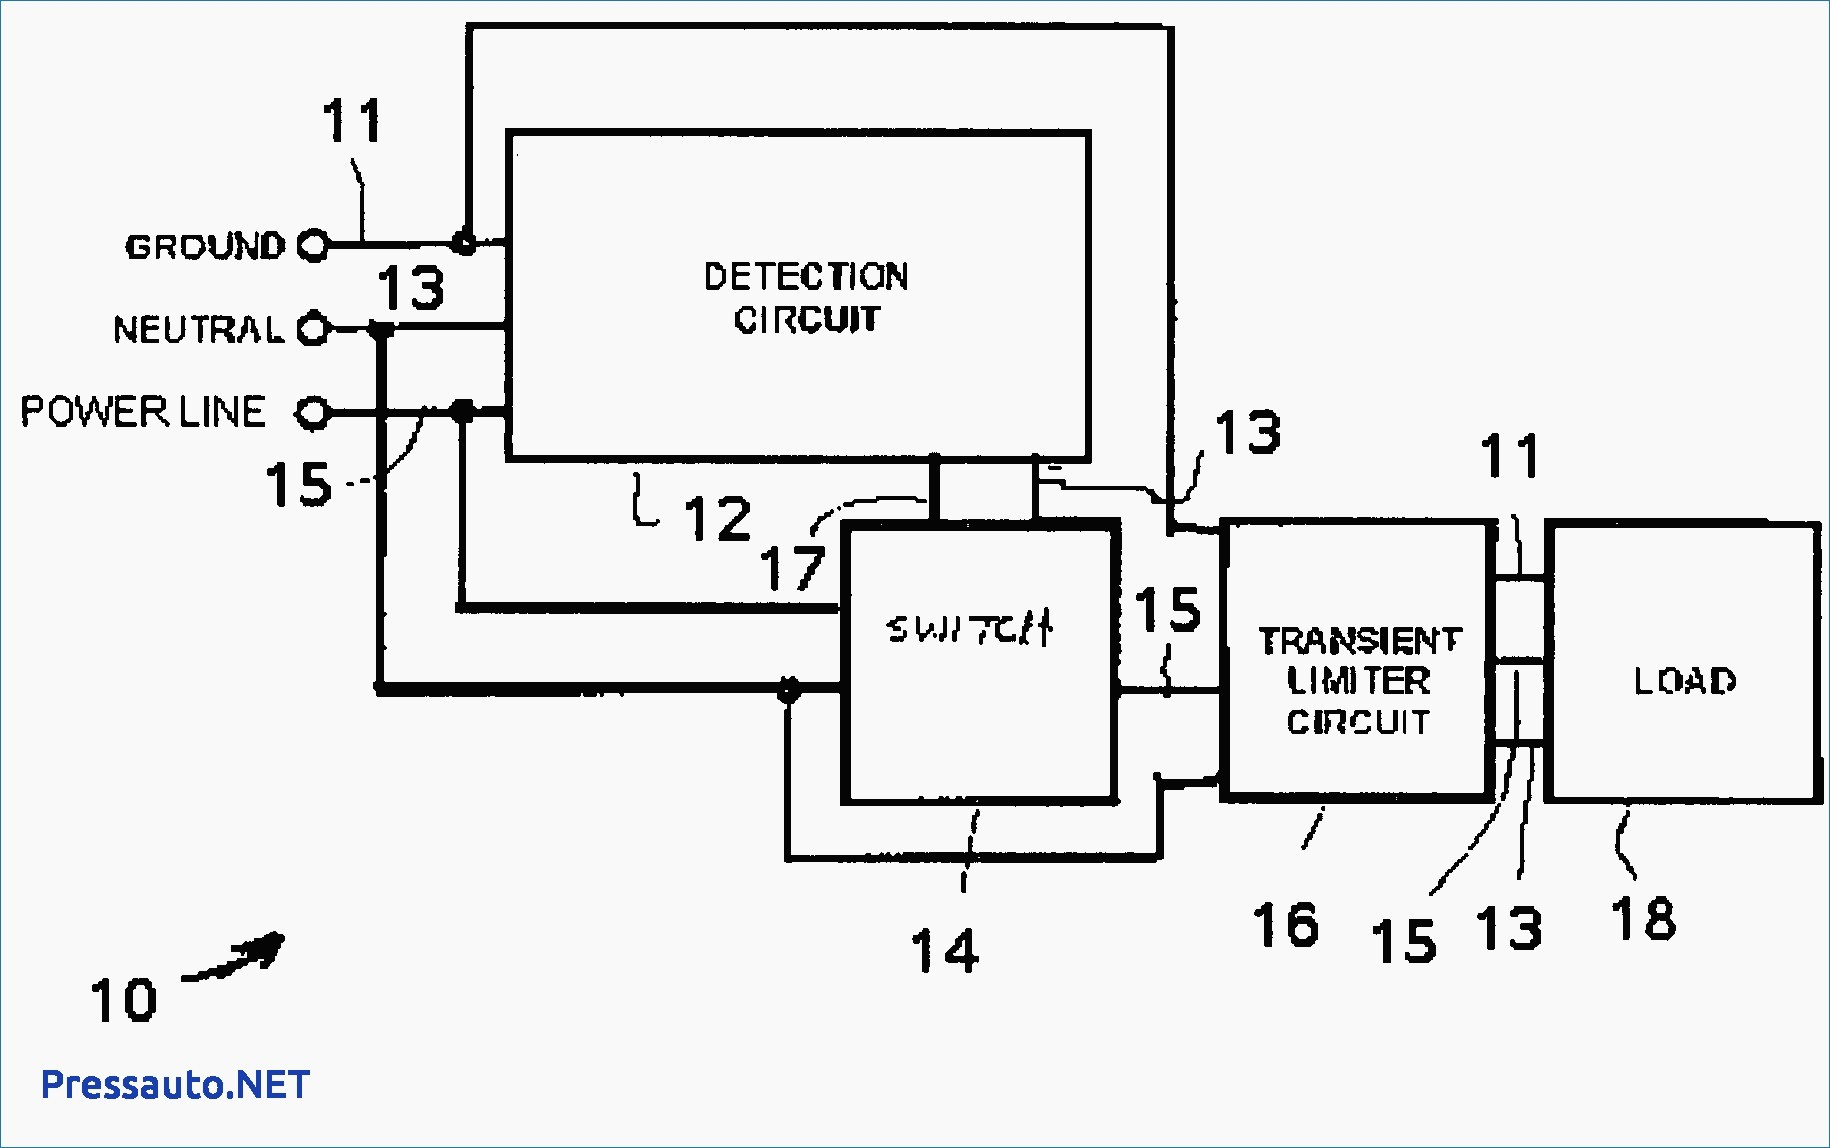 Shunt Breaker Wiring Diagram Copy Circuit Breaker Shunt Trip Wiring Diagram Webtor